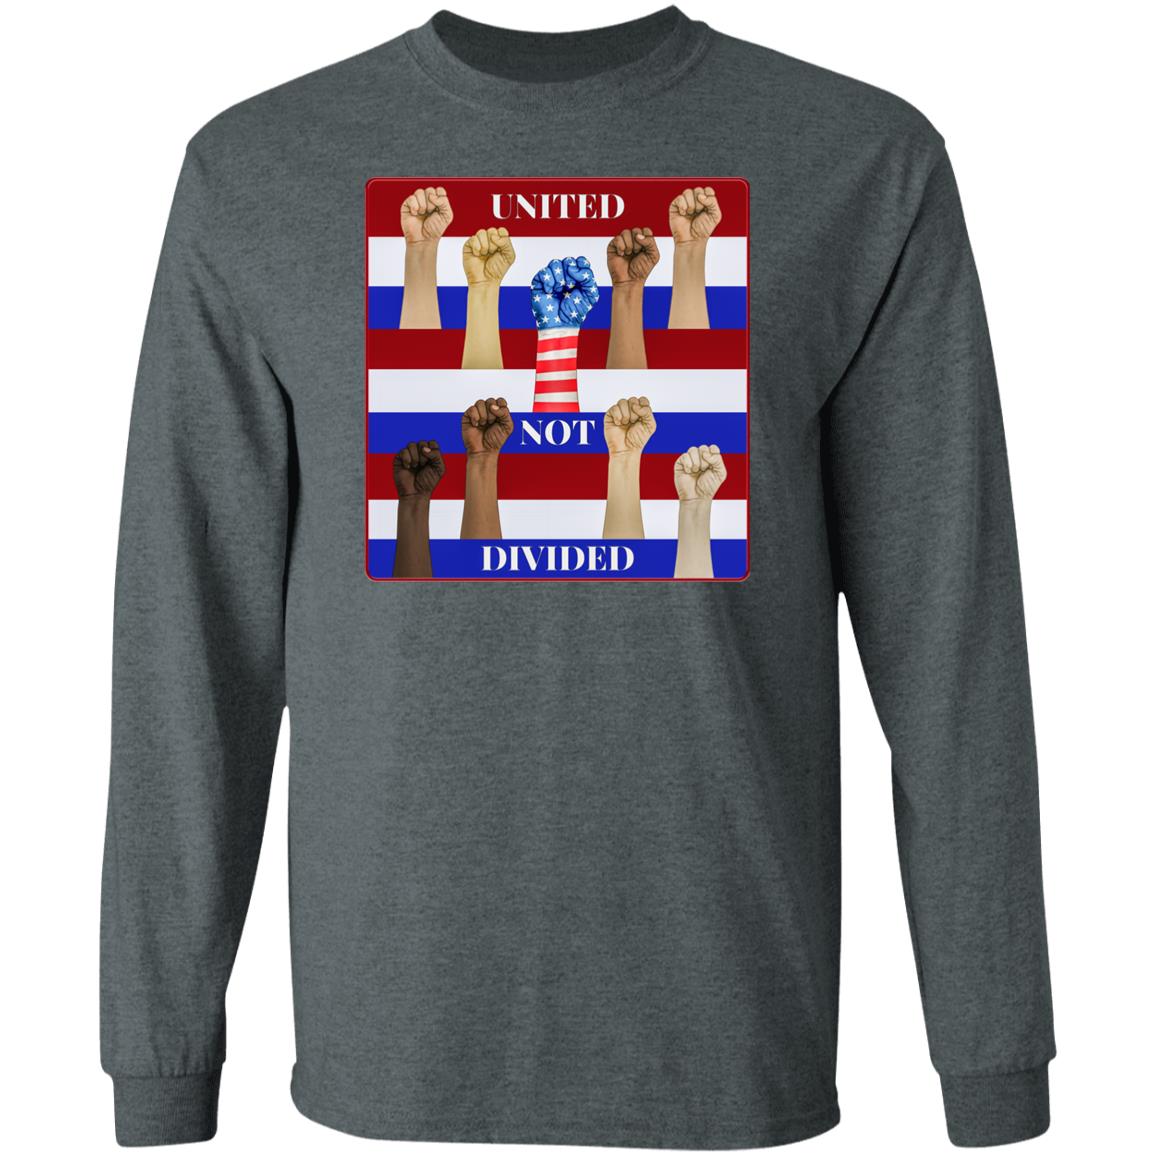 United Not Divided - Men's Long Sleeve T-Shirt